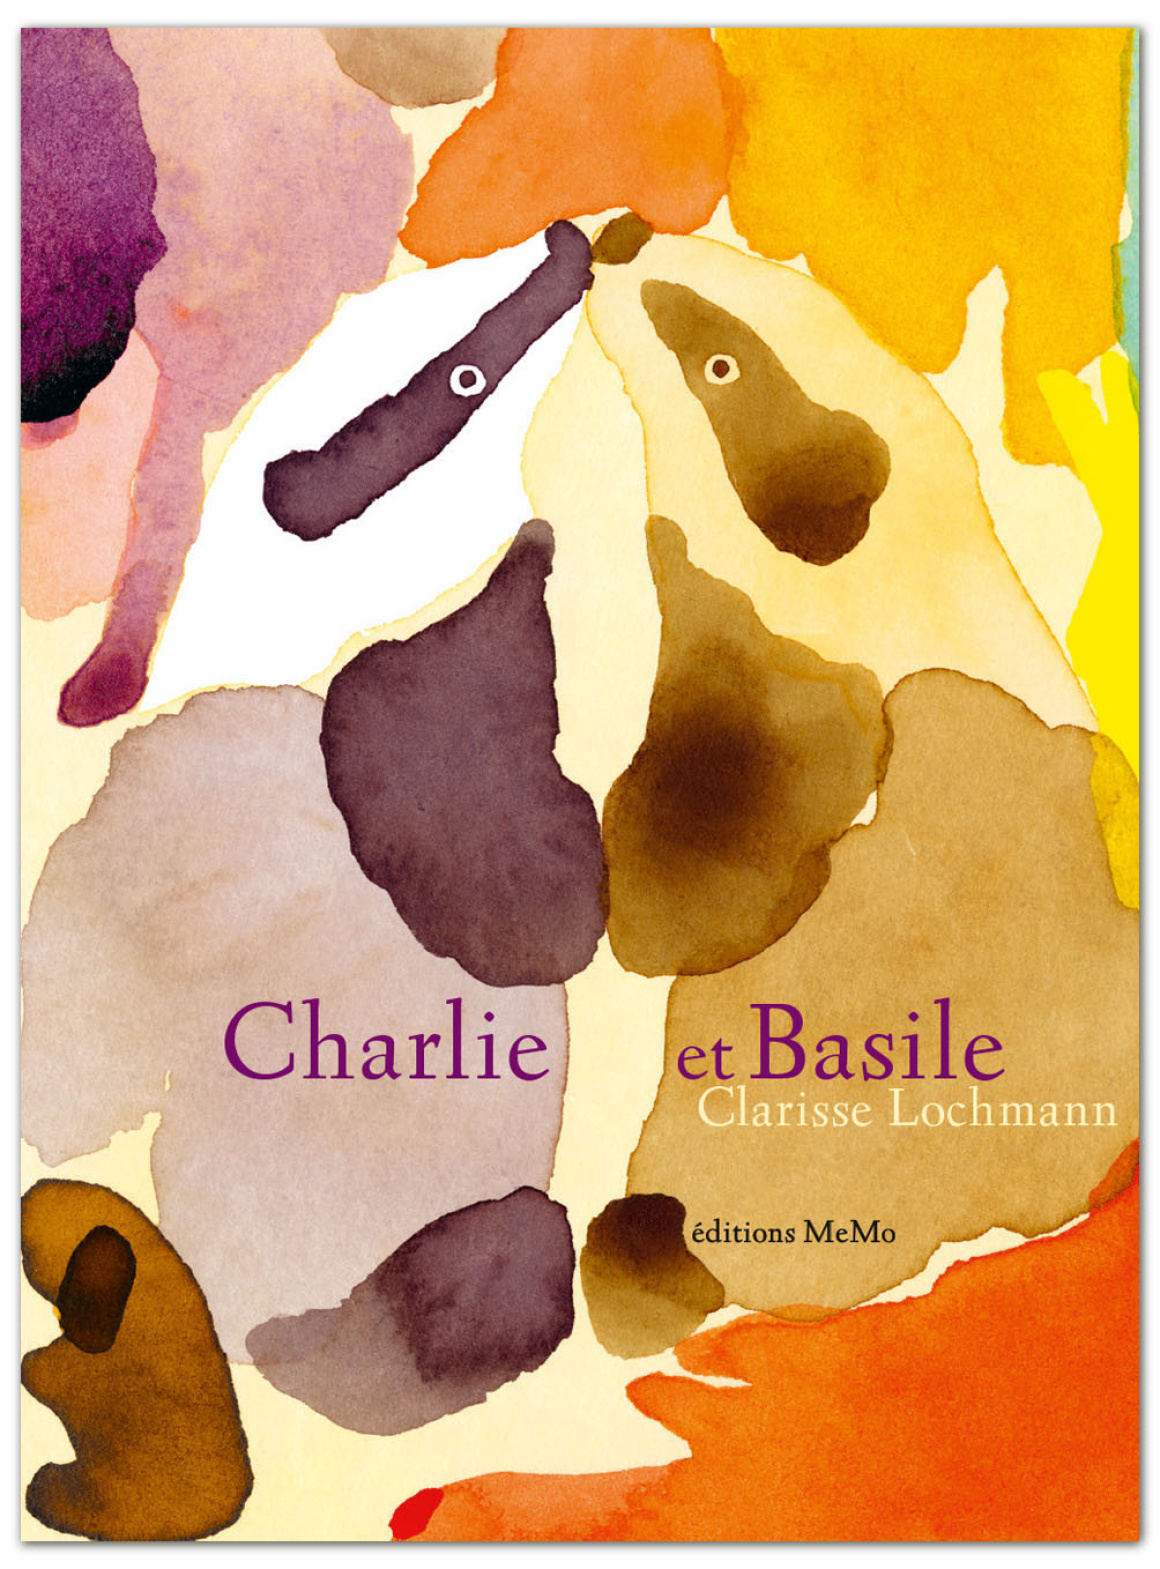 Charlie et Basile, éditions MeMo